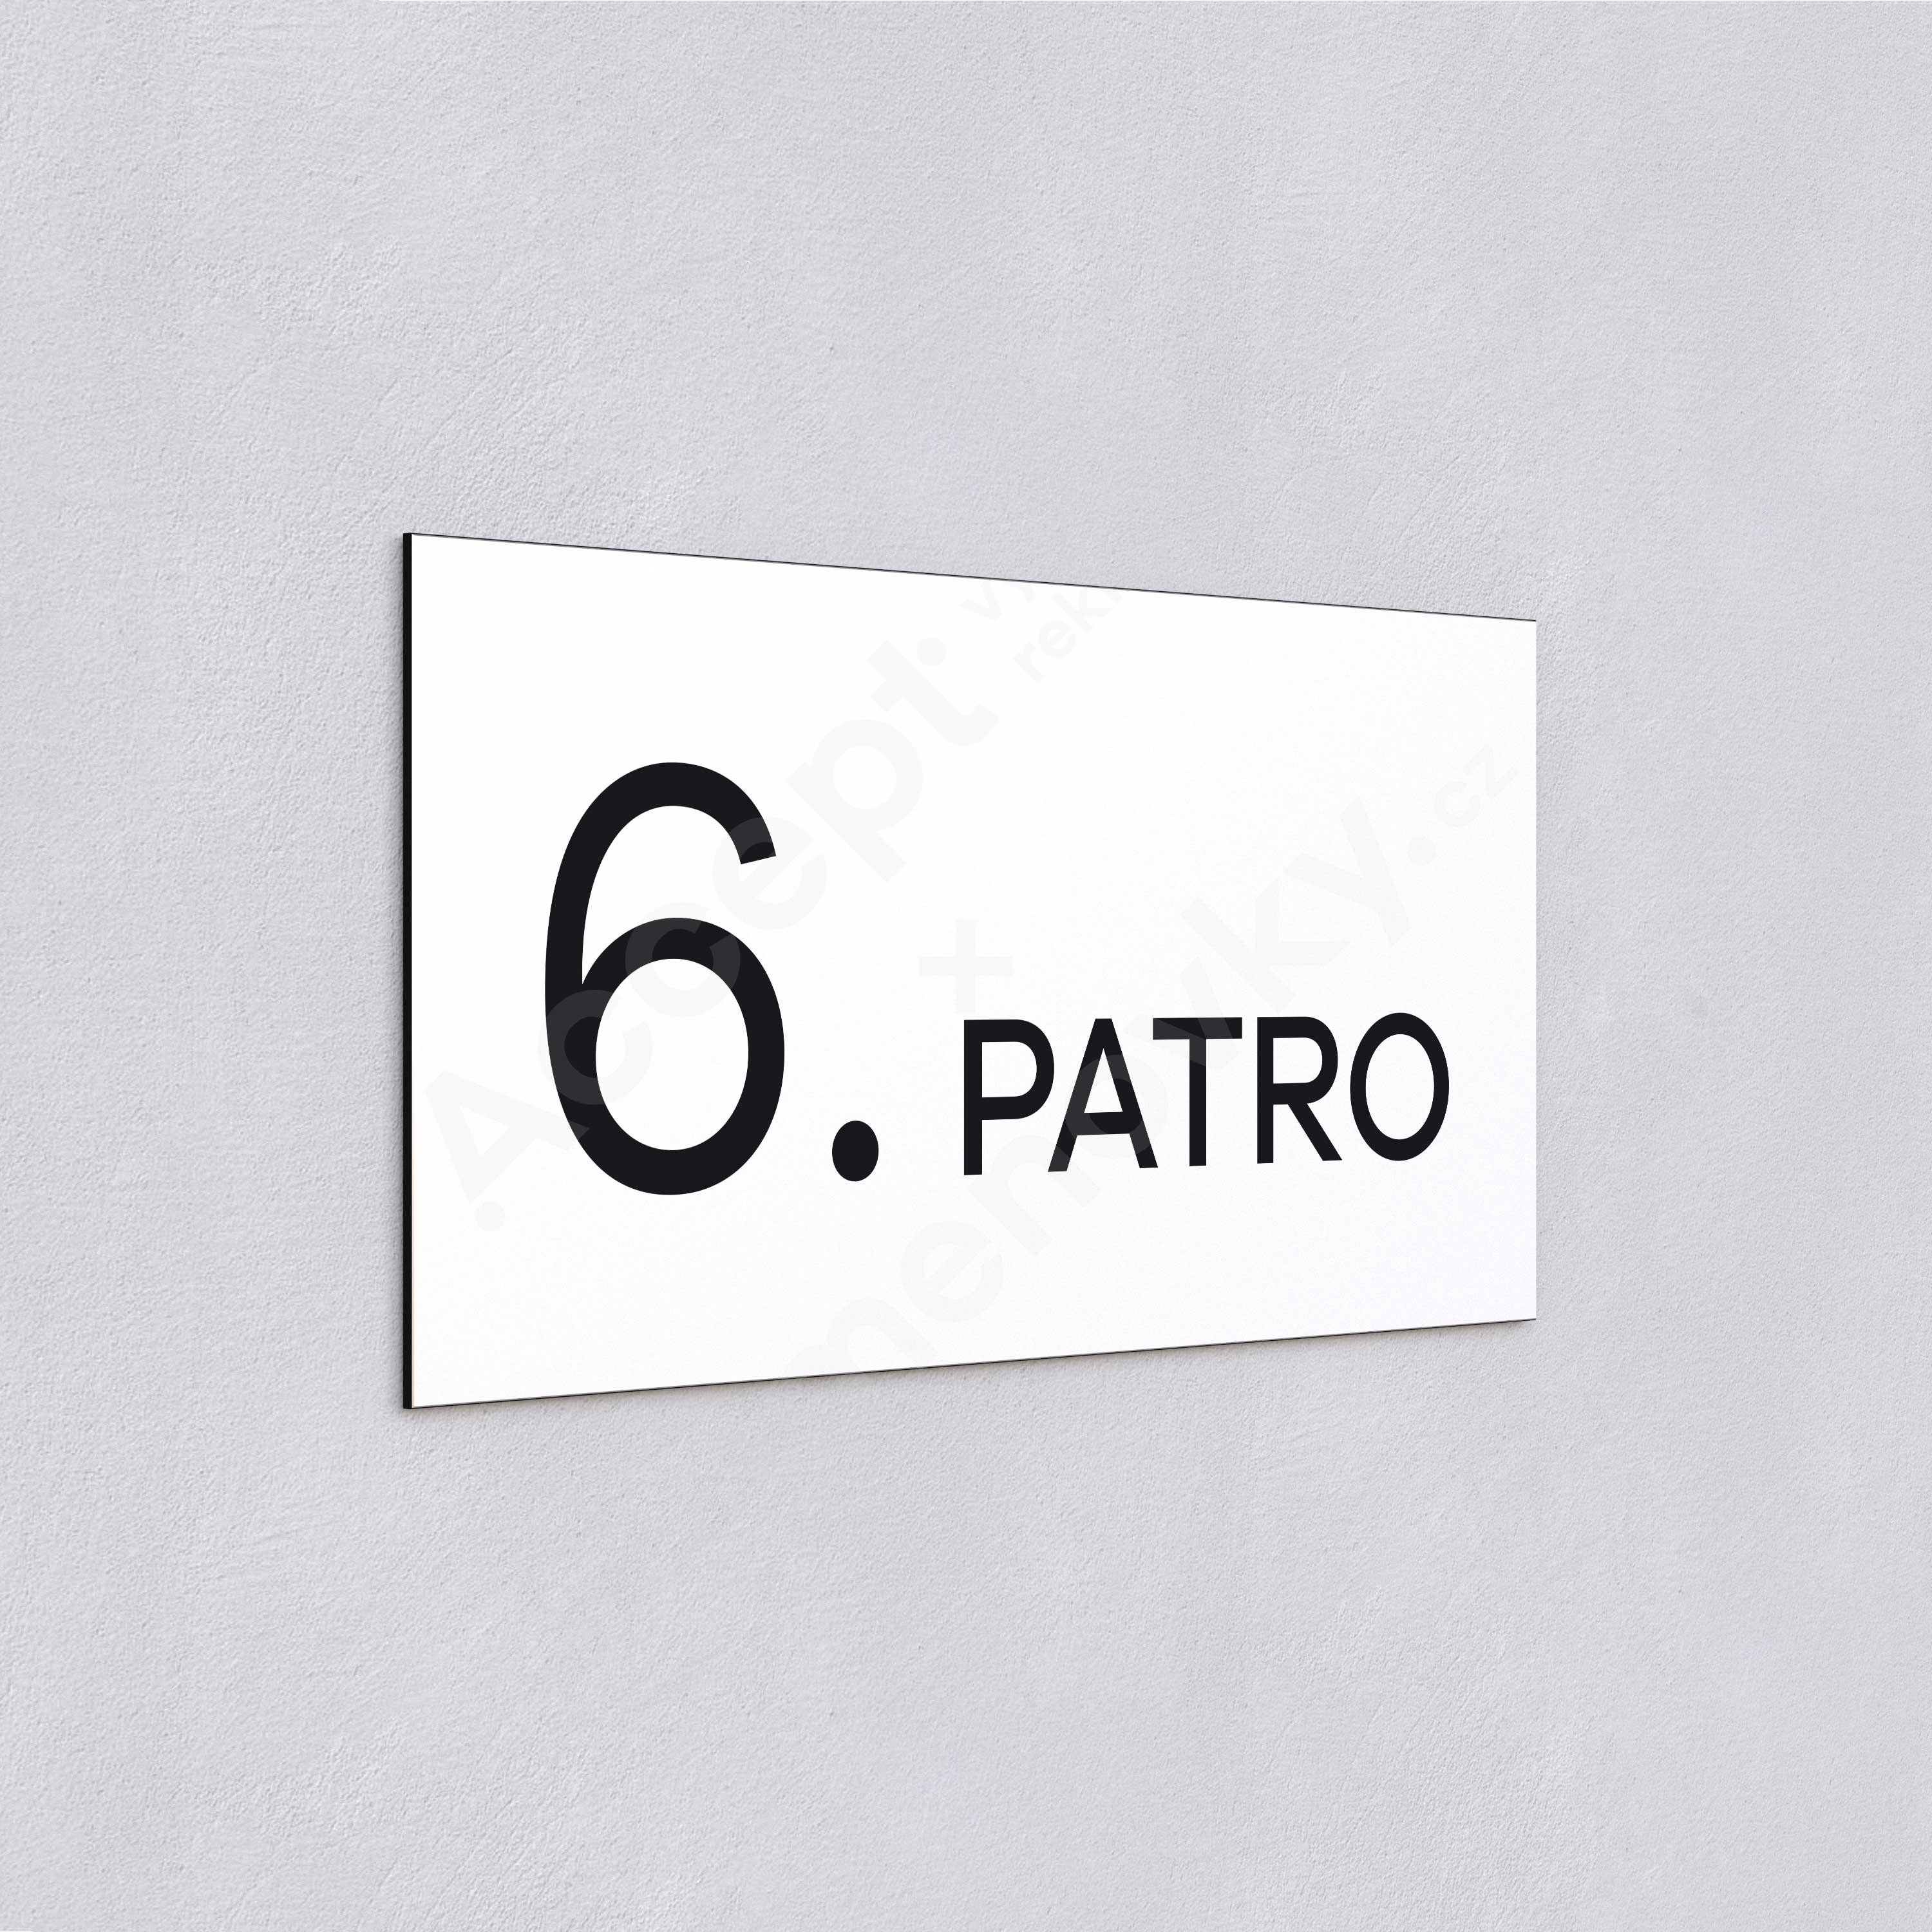 Označení podlaží "6. PATRO" - bílá tabulka - černý popis